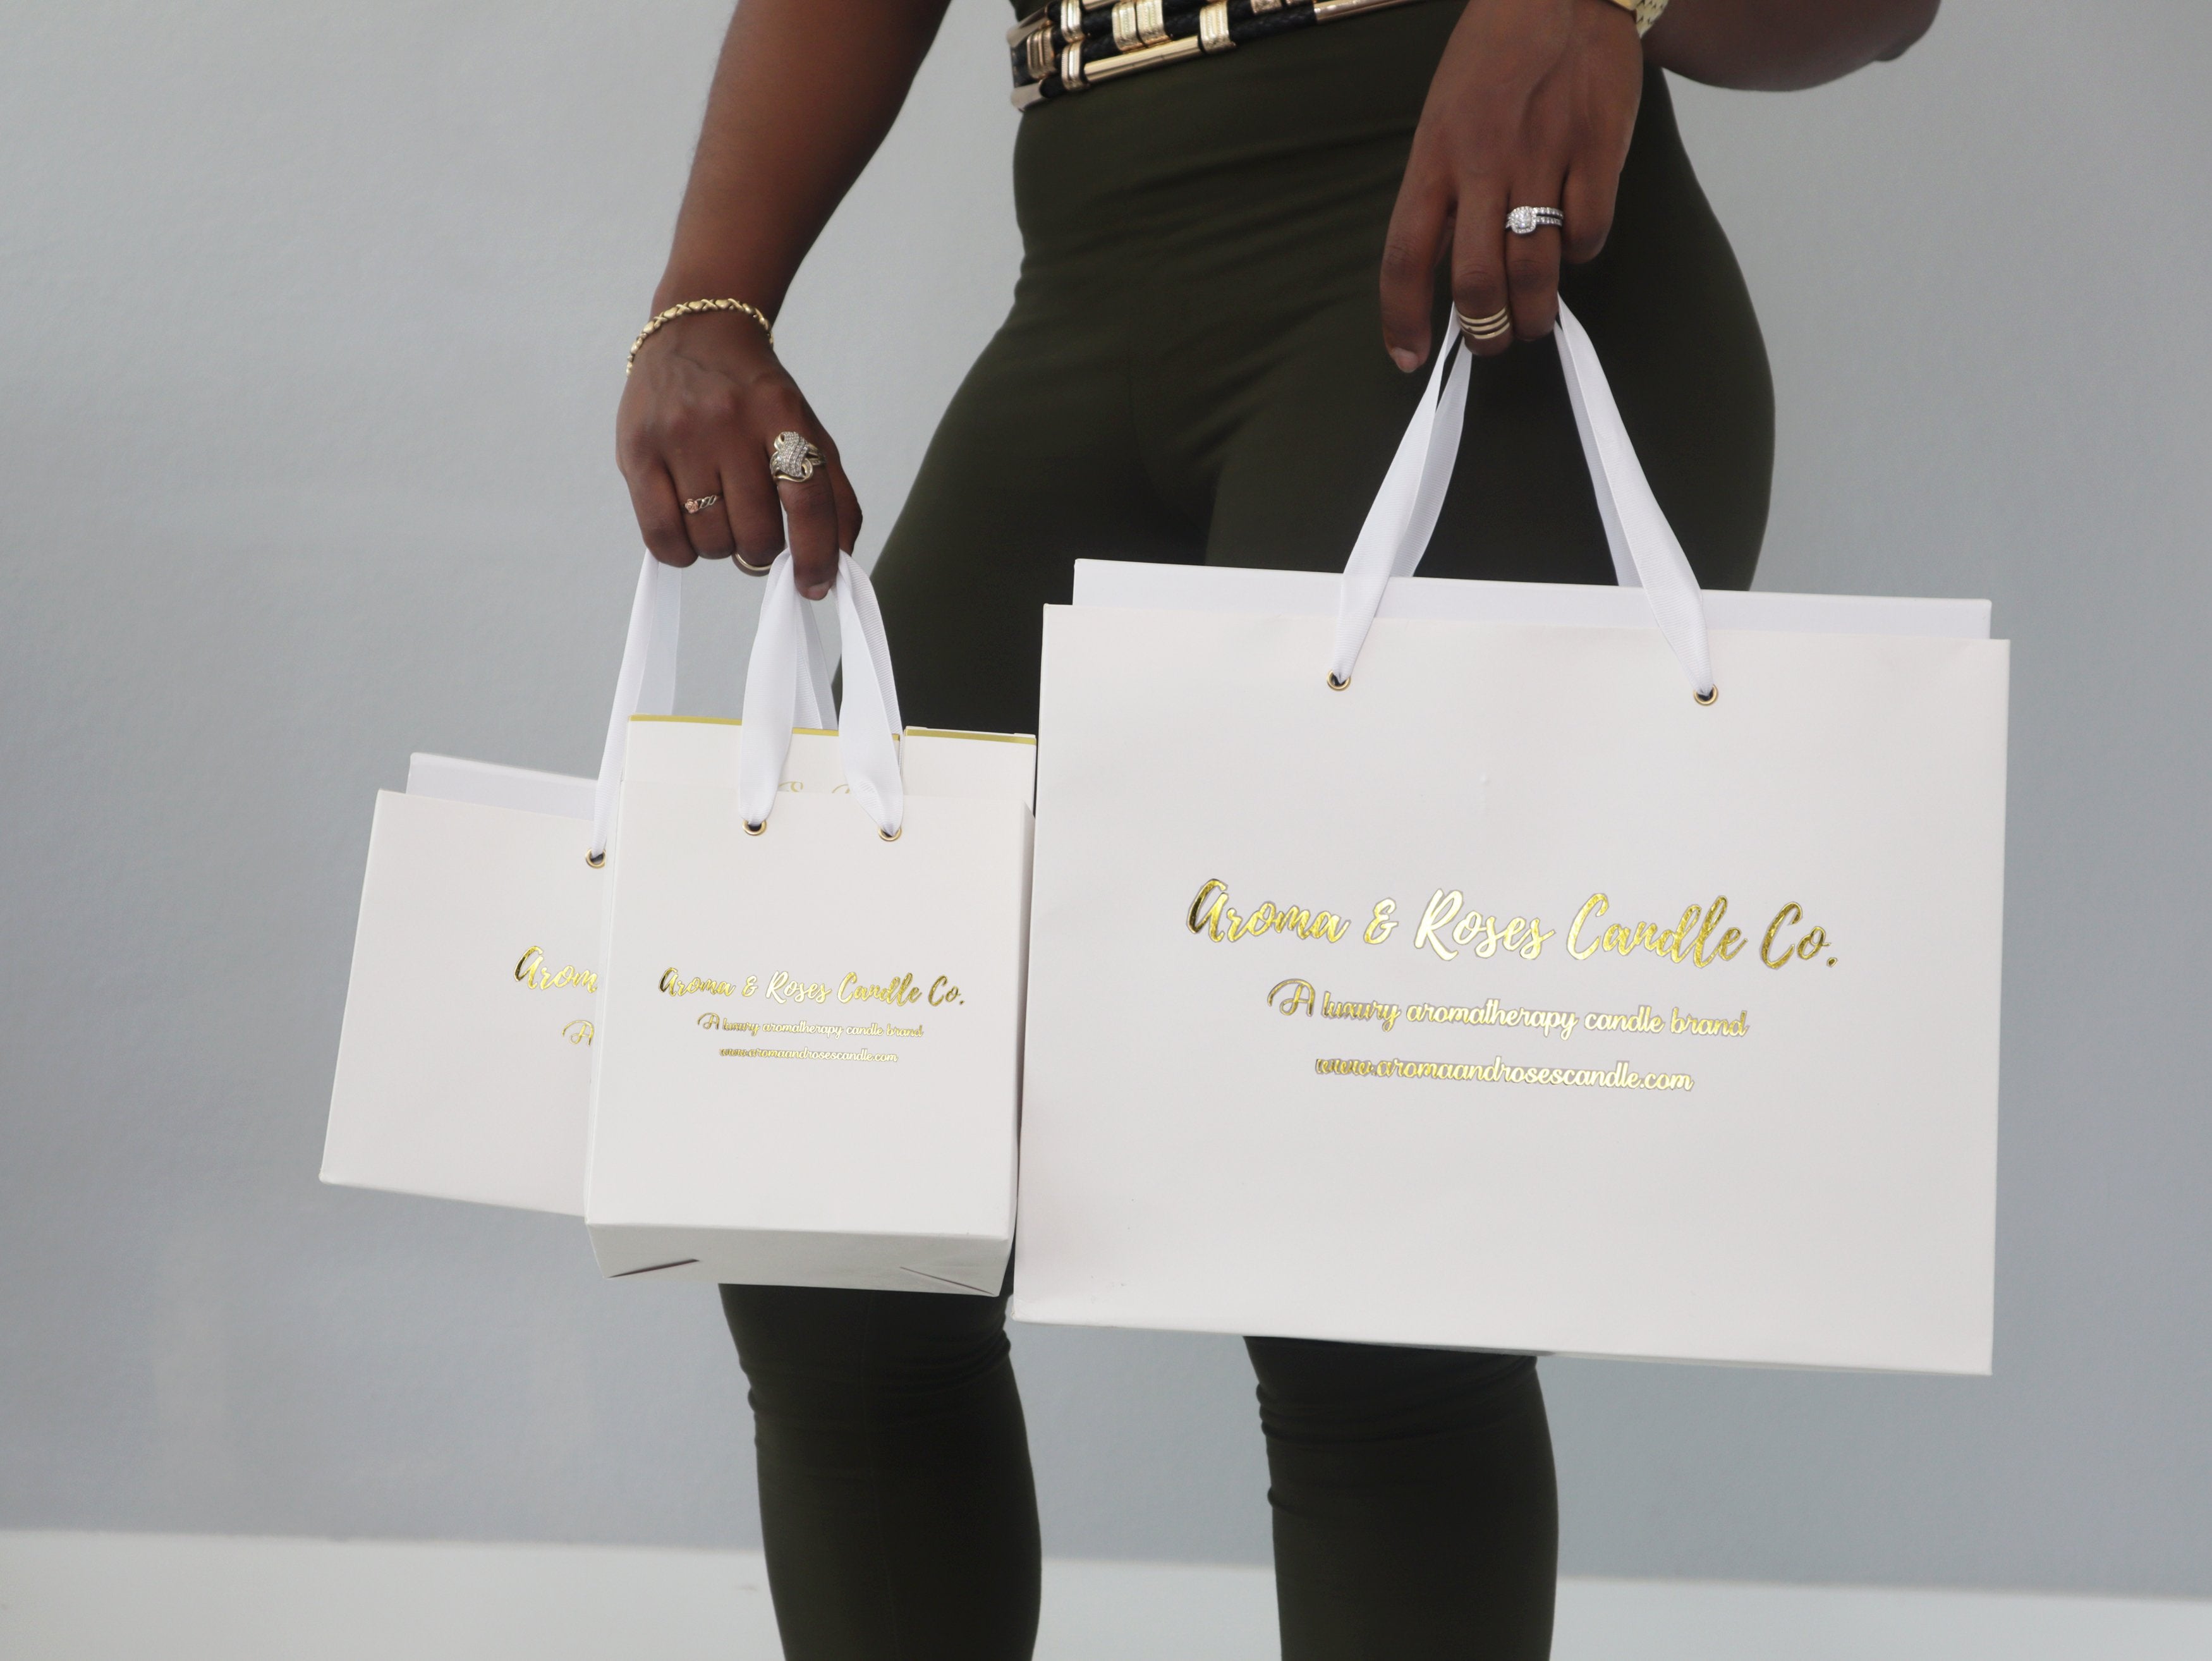 Luxury Gift Bag – aromaandrosescandle